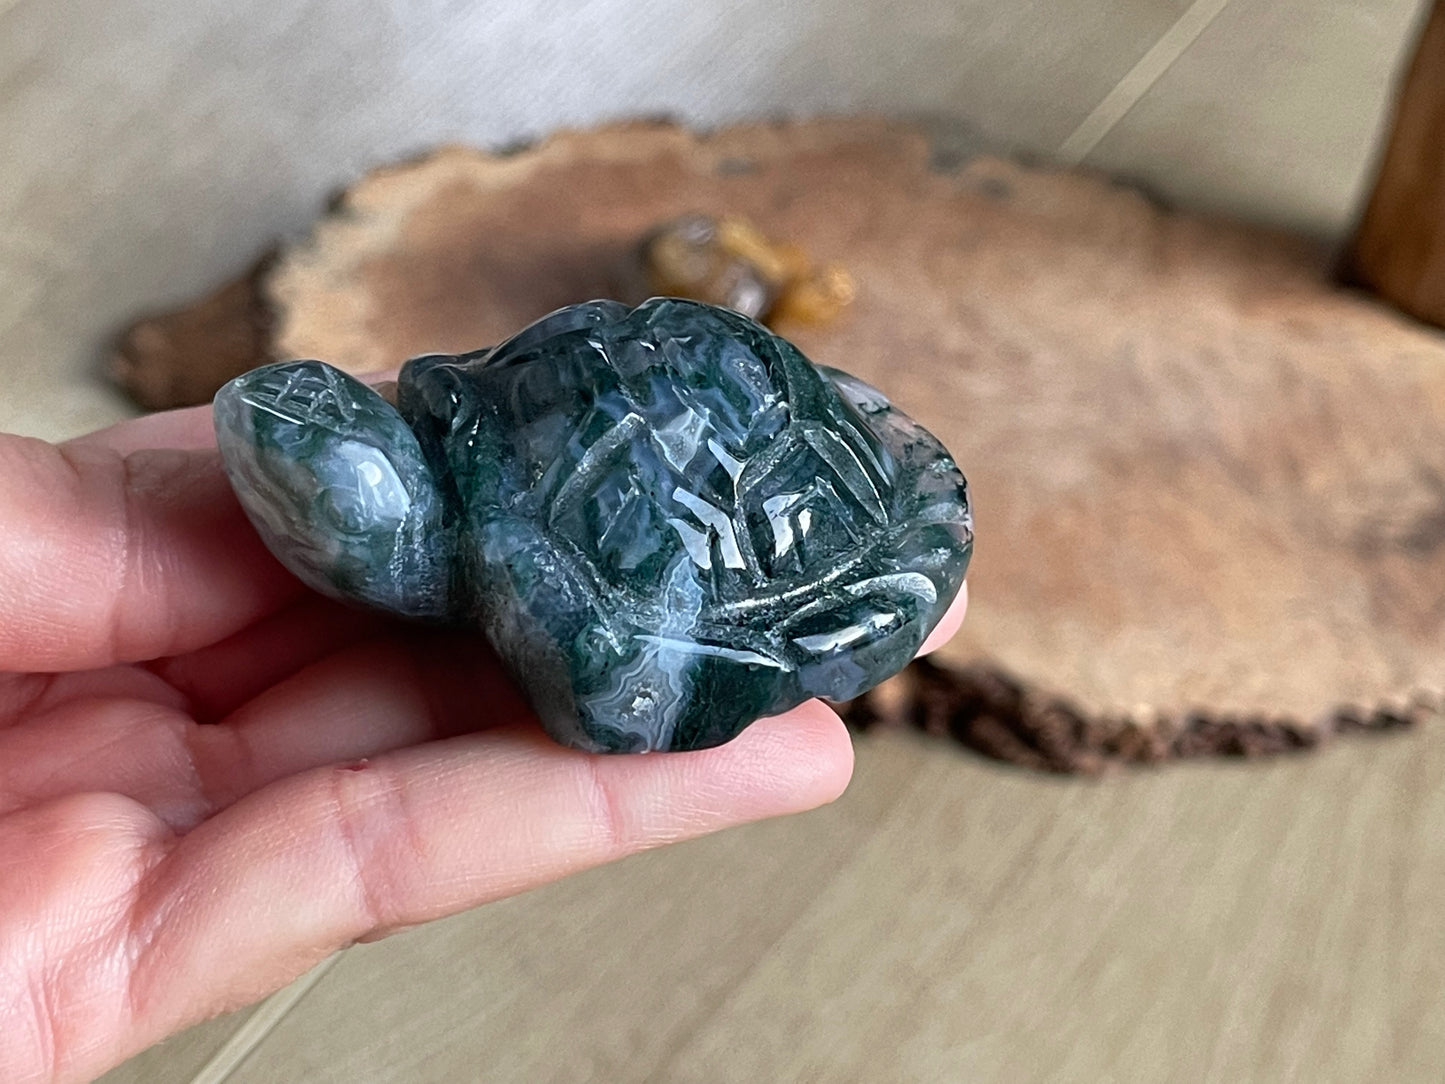 Carved bigger turtles